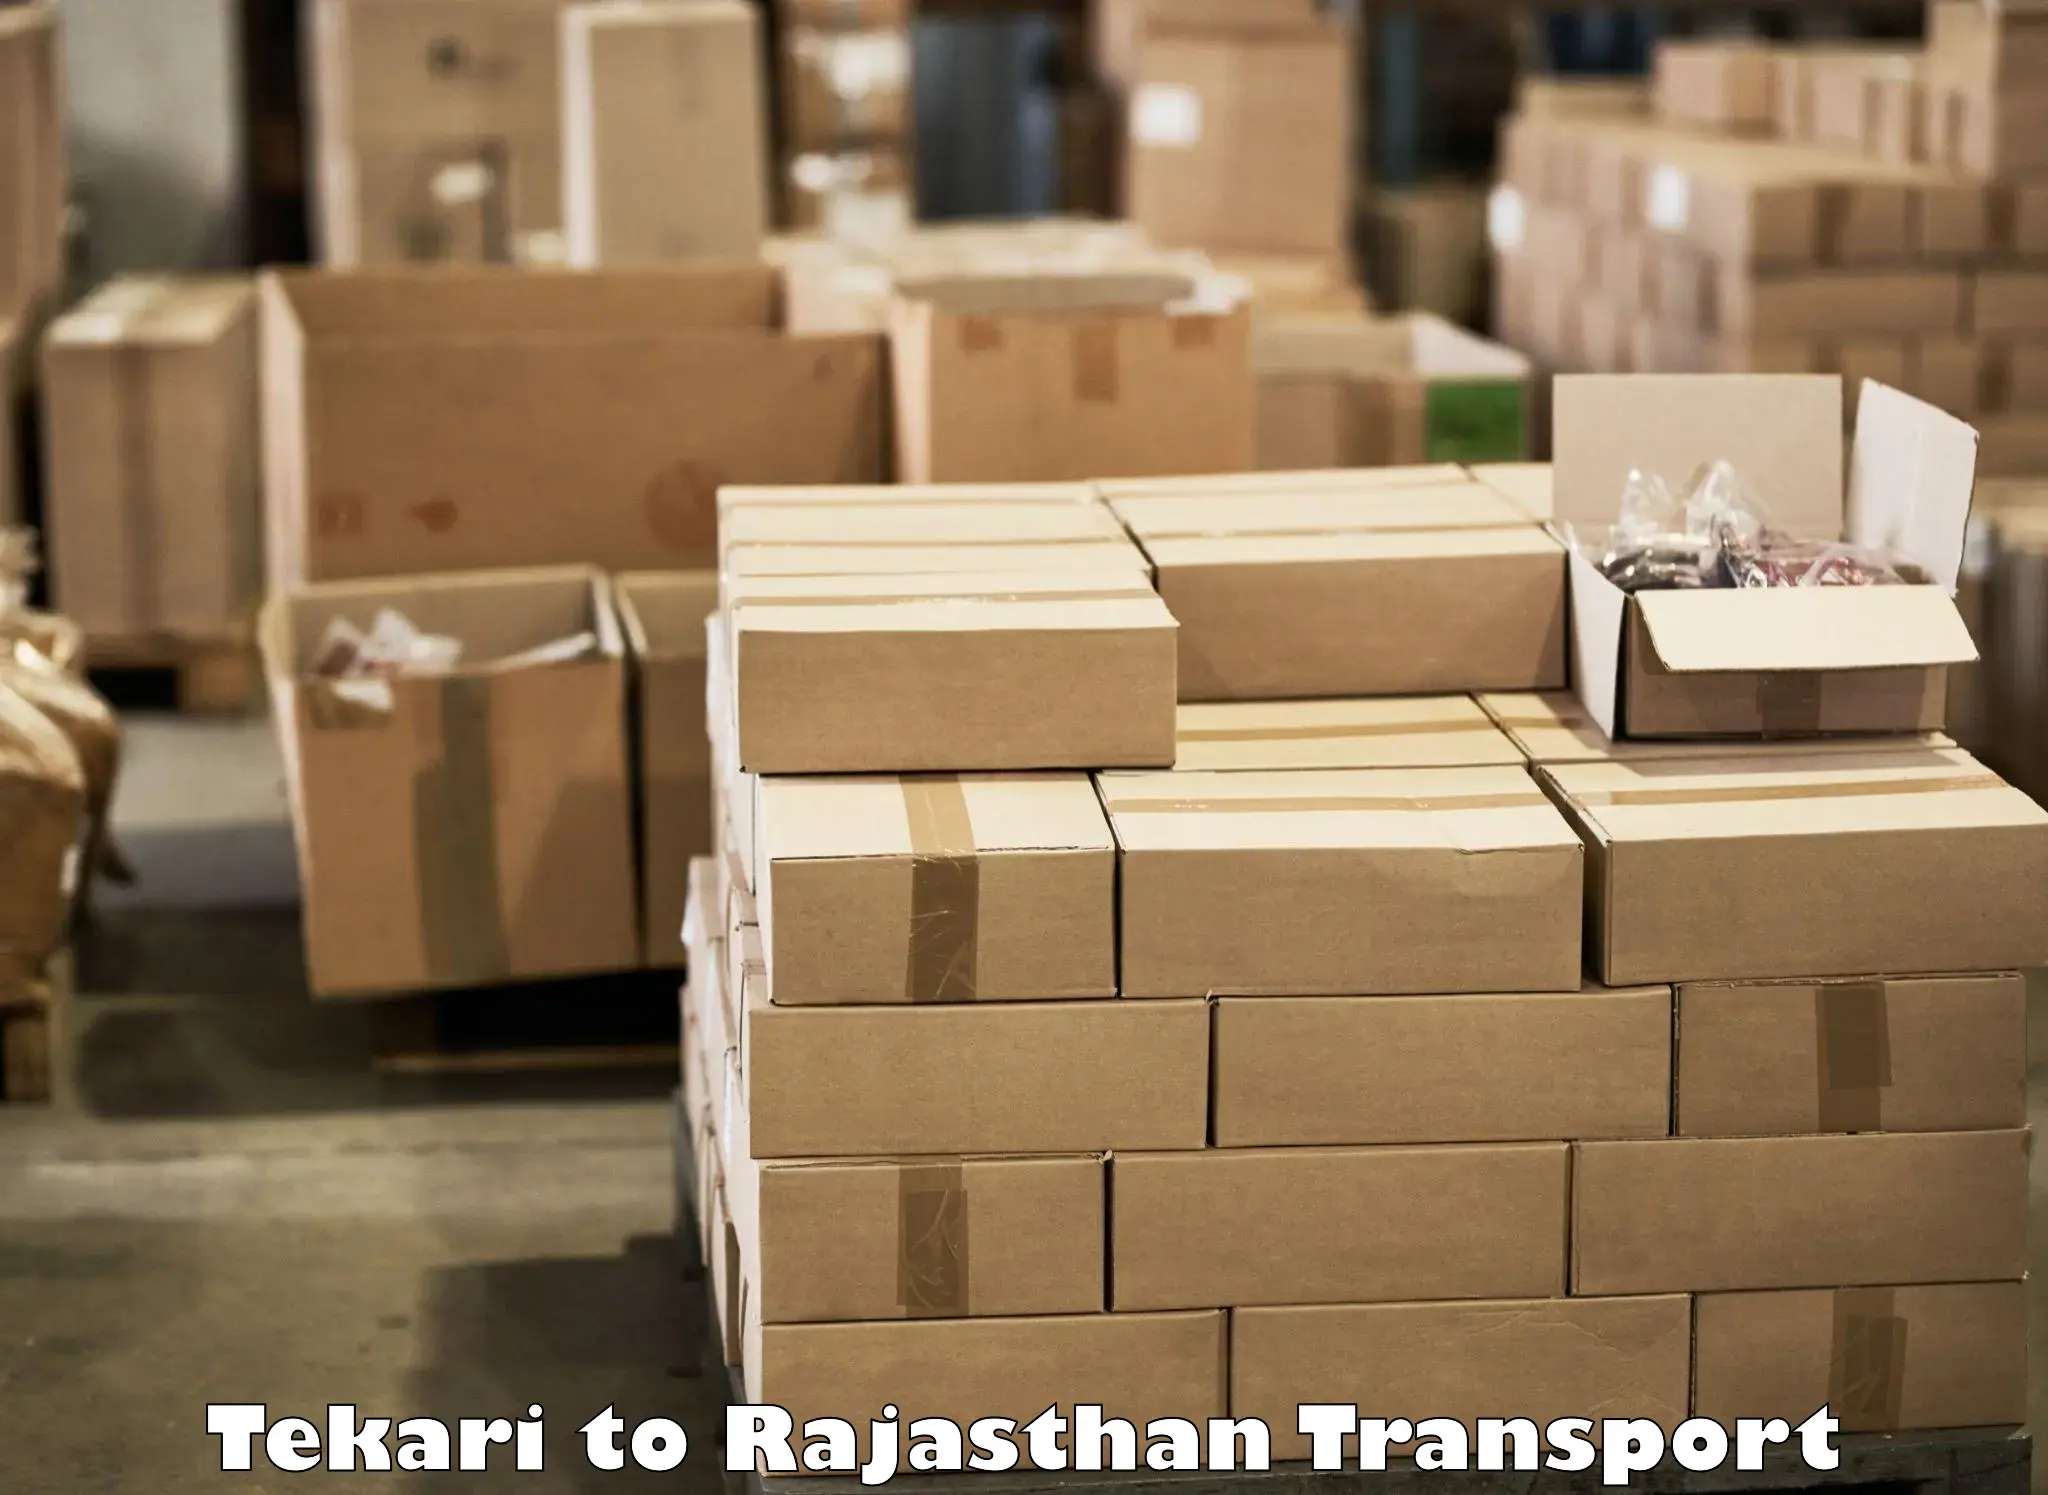 Lorry transport service Tekari to Rajasthan